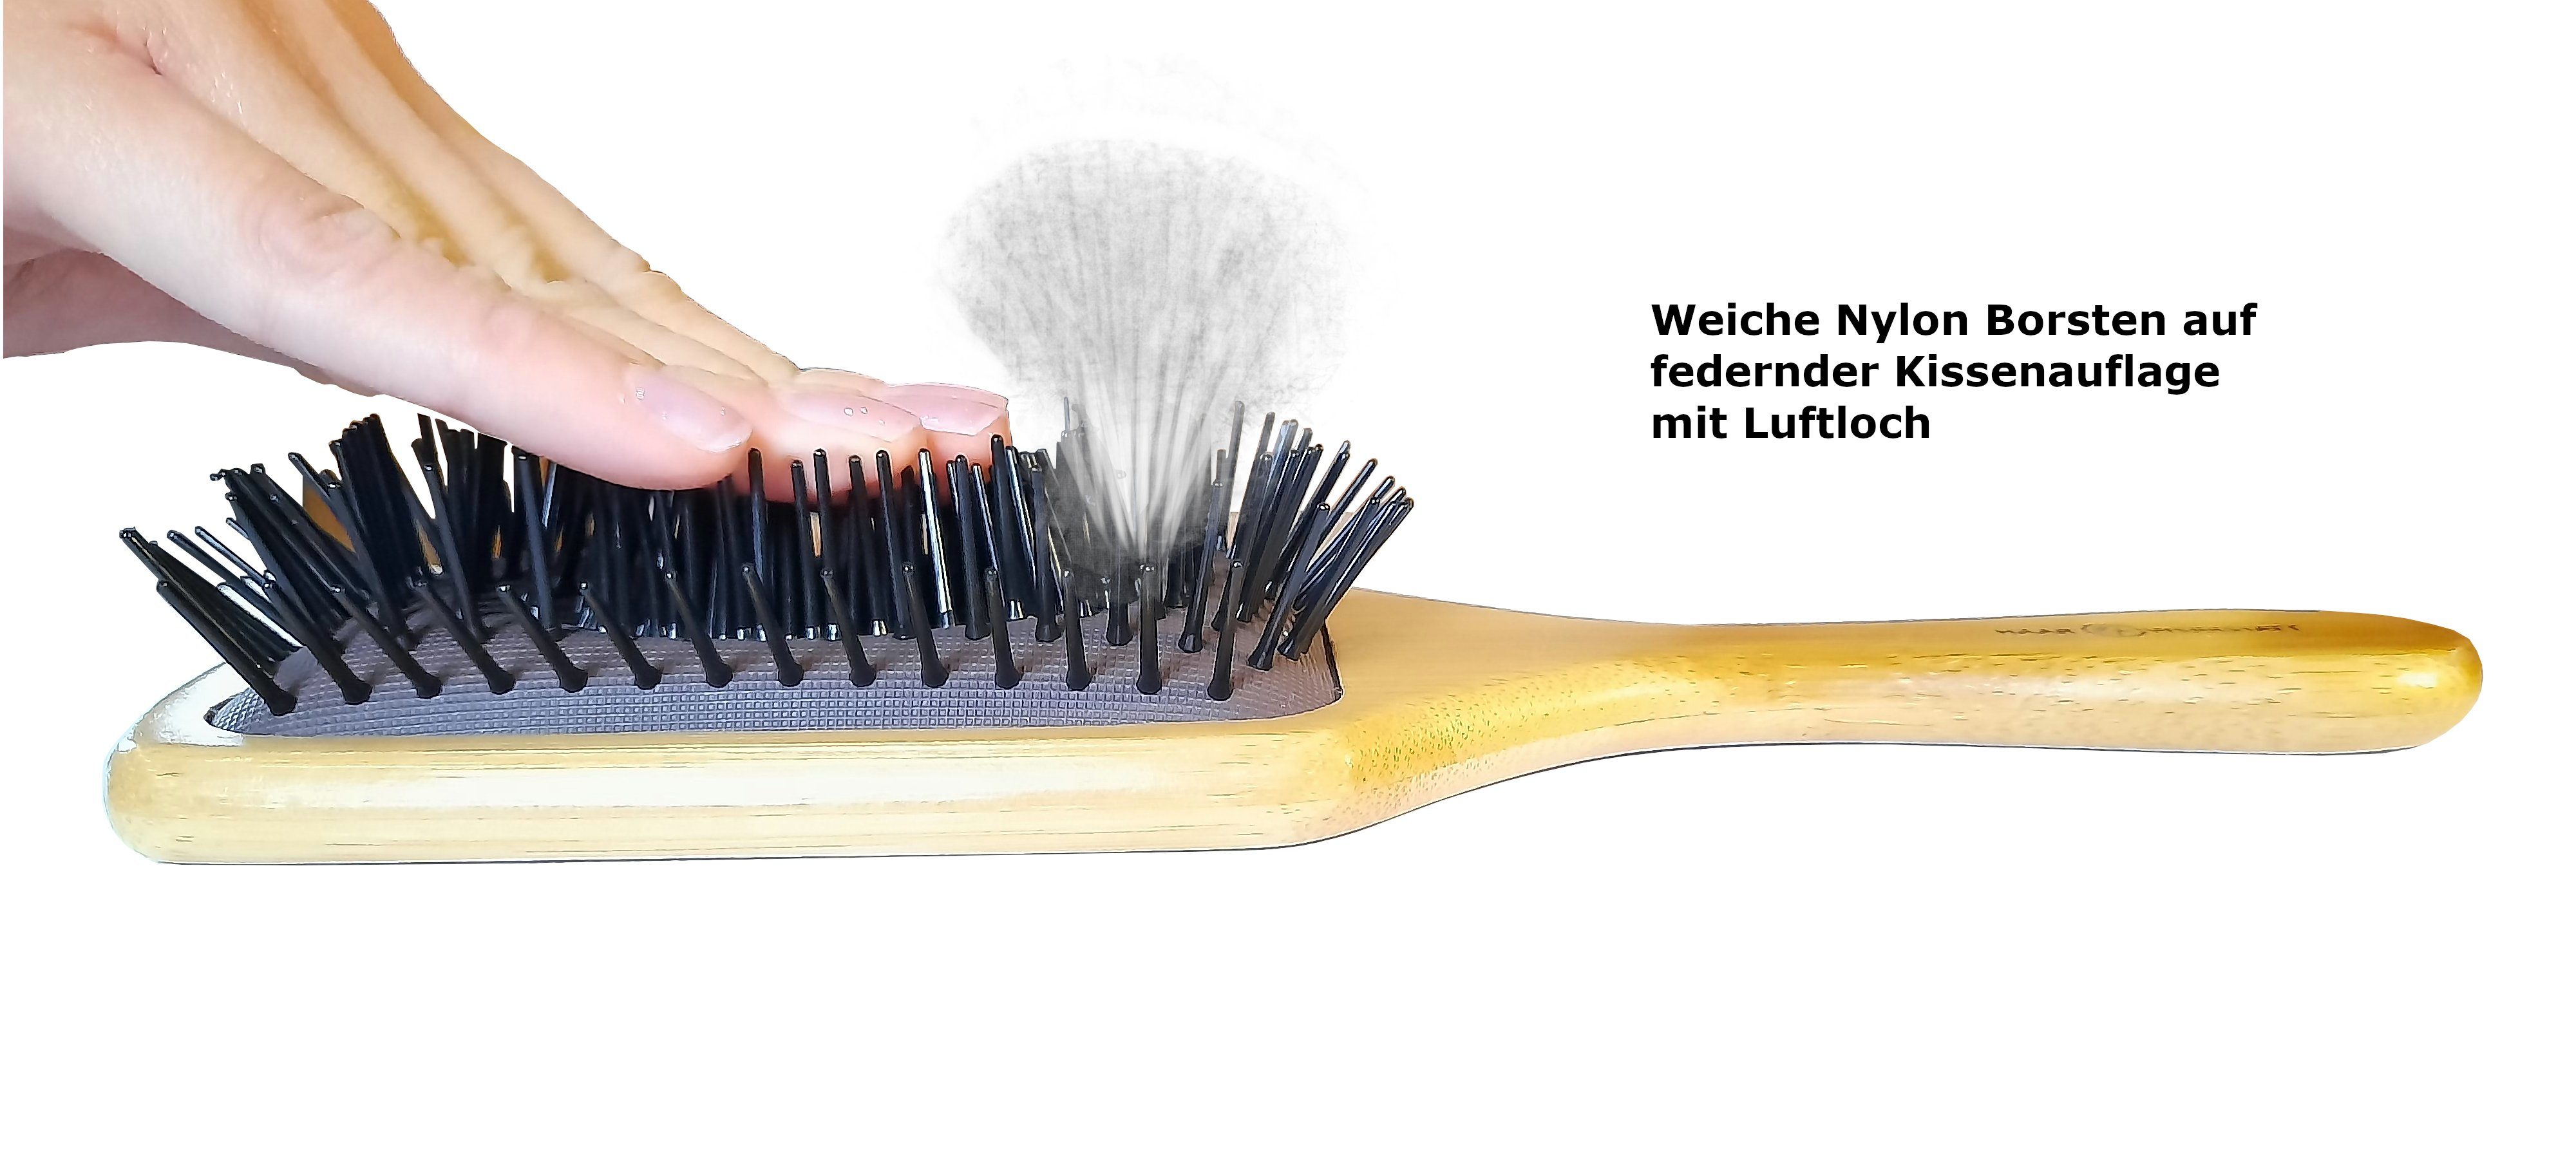 vereinfachen & Holzbürste für für Profi Borsten - Haare Haarwerkstatt weichen Entwirren Die und optimale das Die Damen Herren Haar, Ihr Haarbürste der Haarbürste Durchkämmen